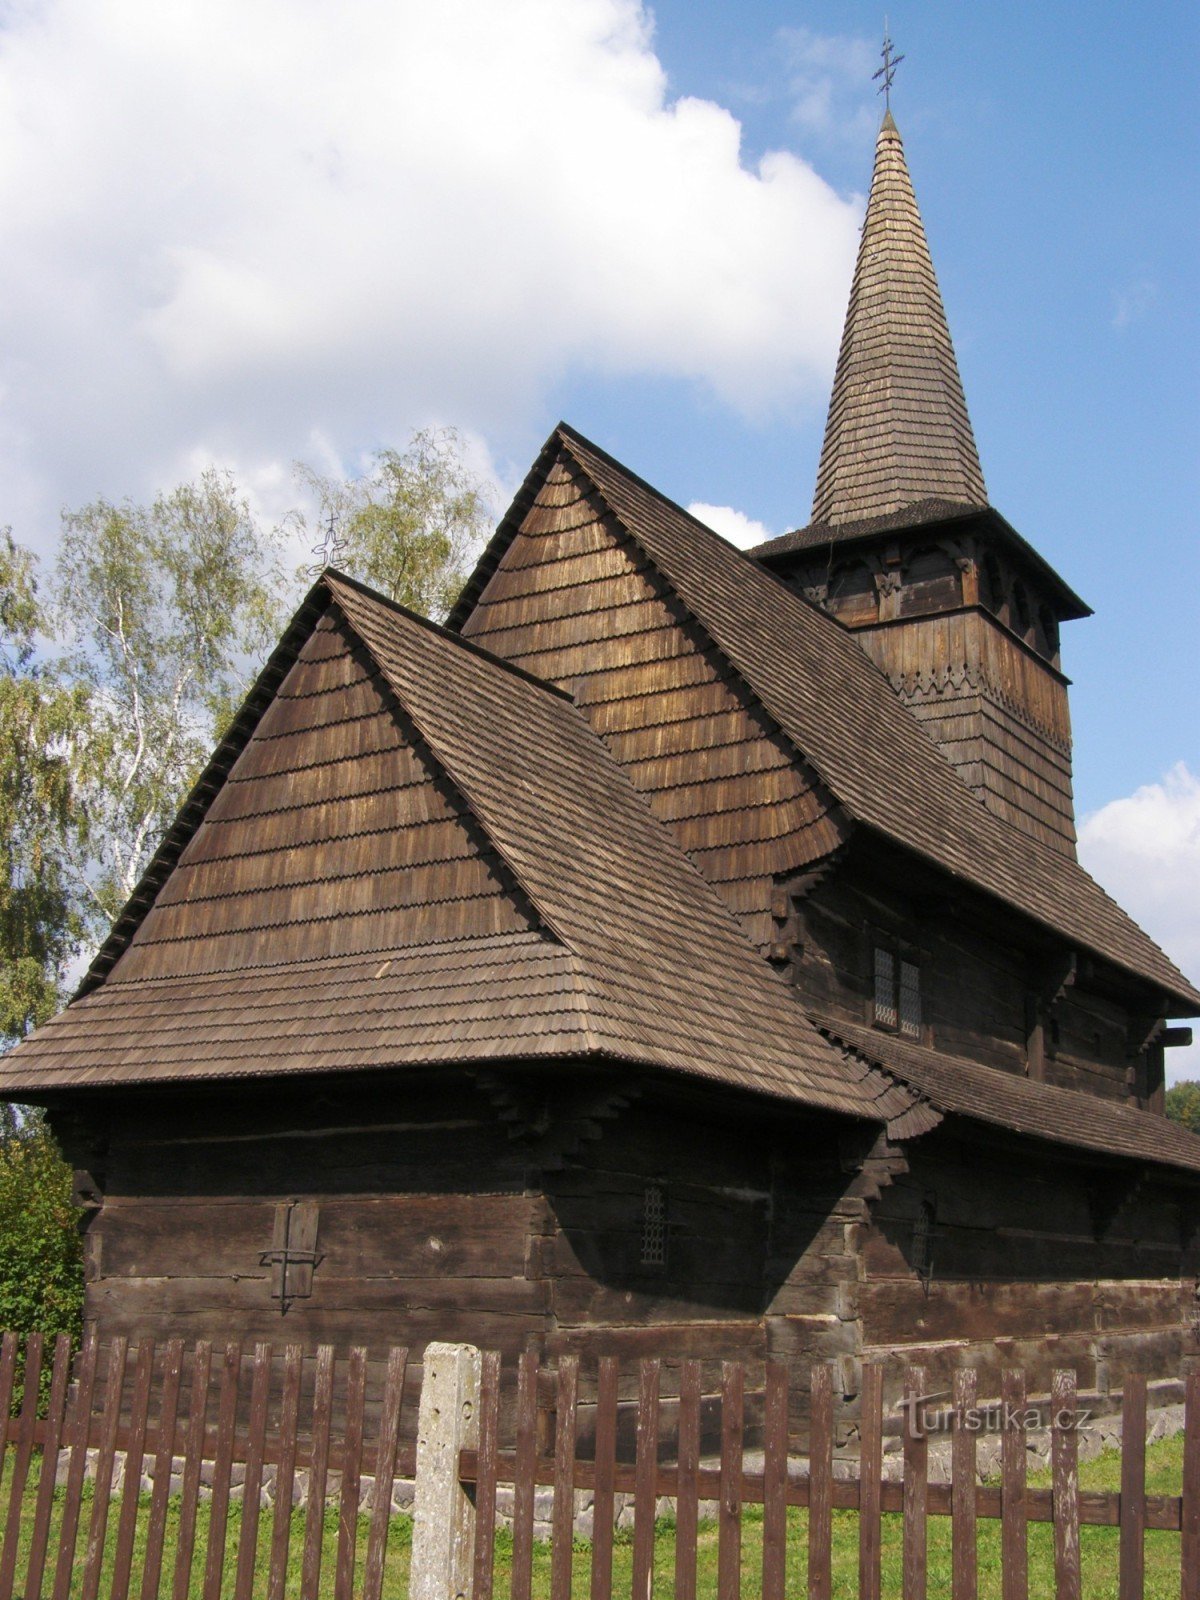 Dobříkov - drewniany kościół Wszystkich Świętych